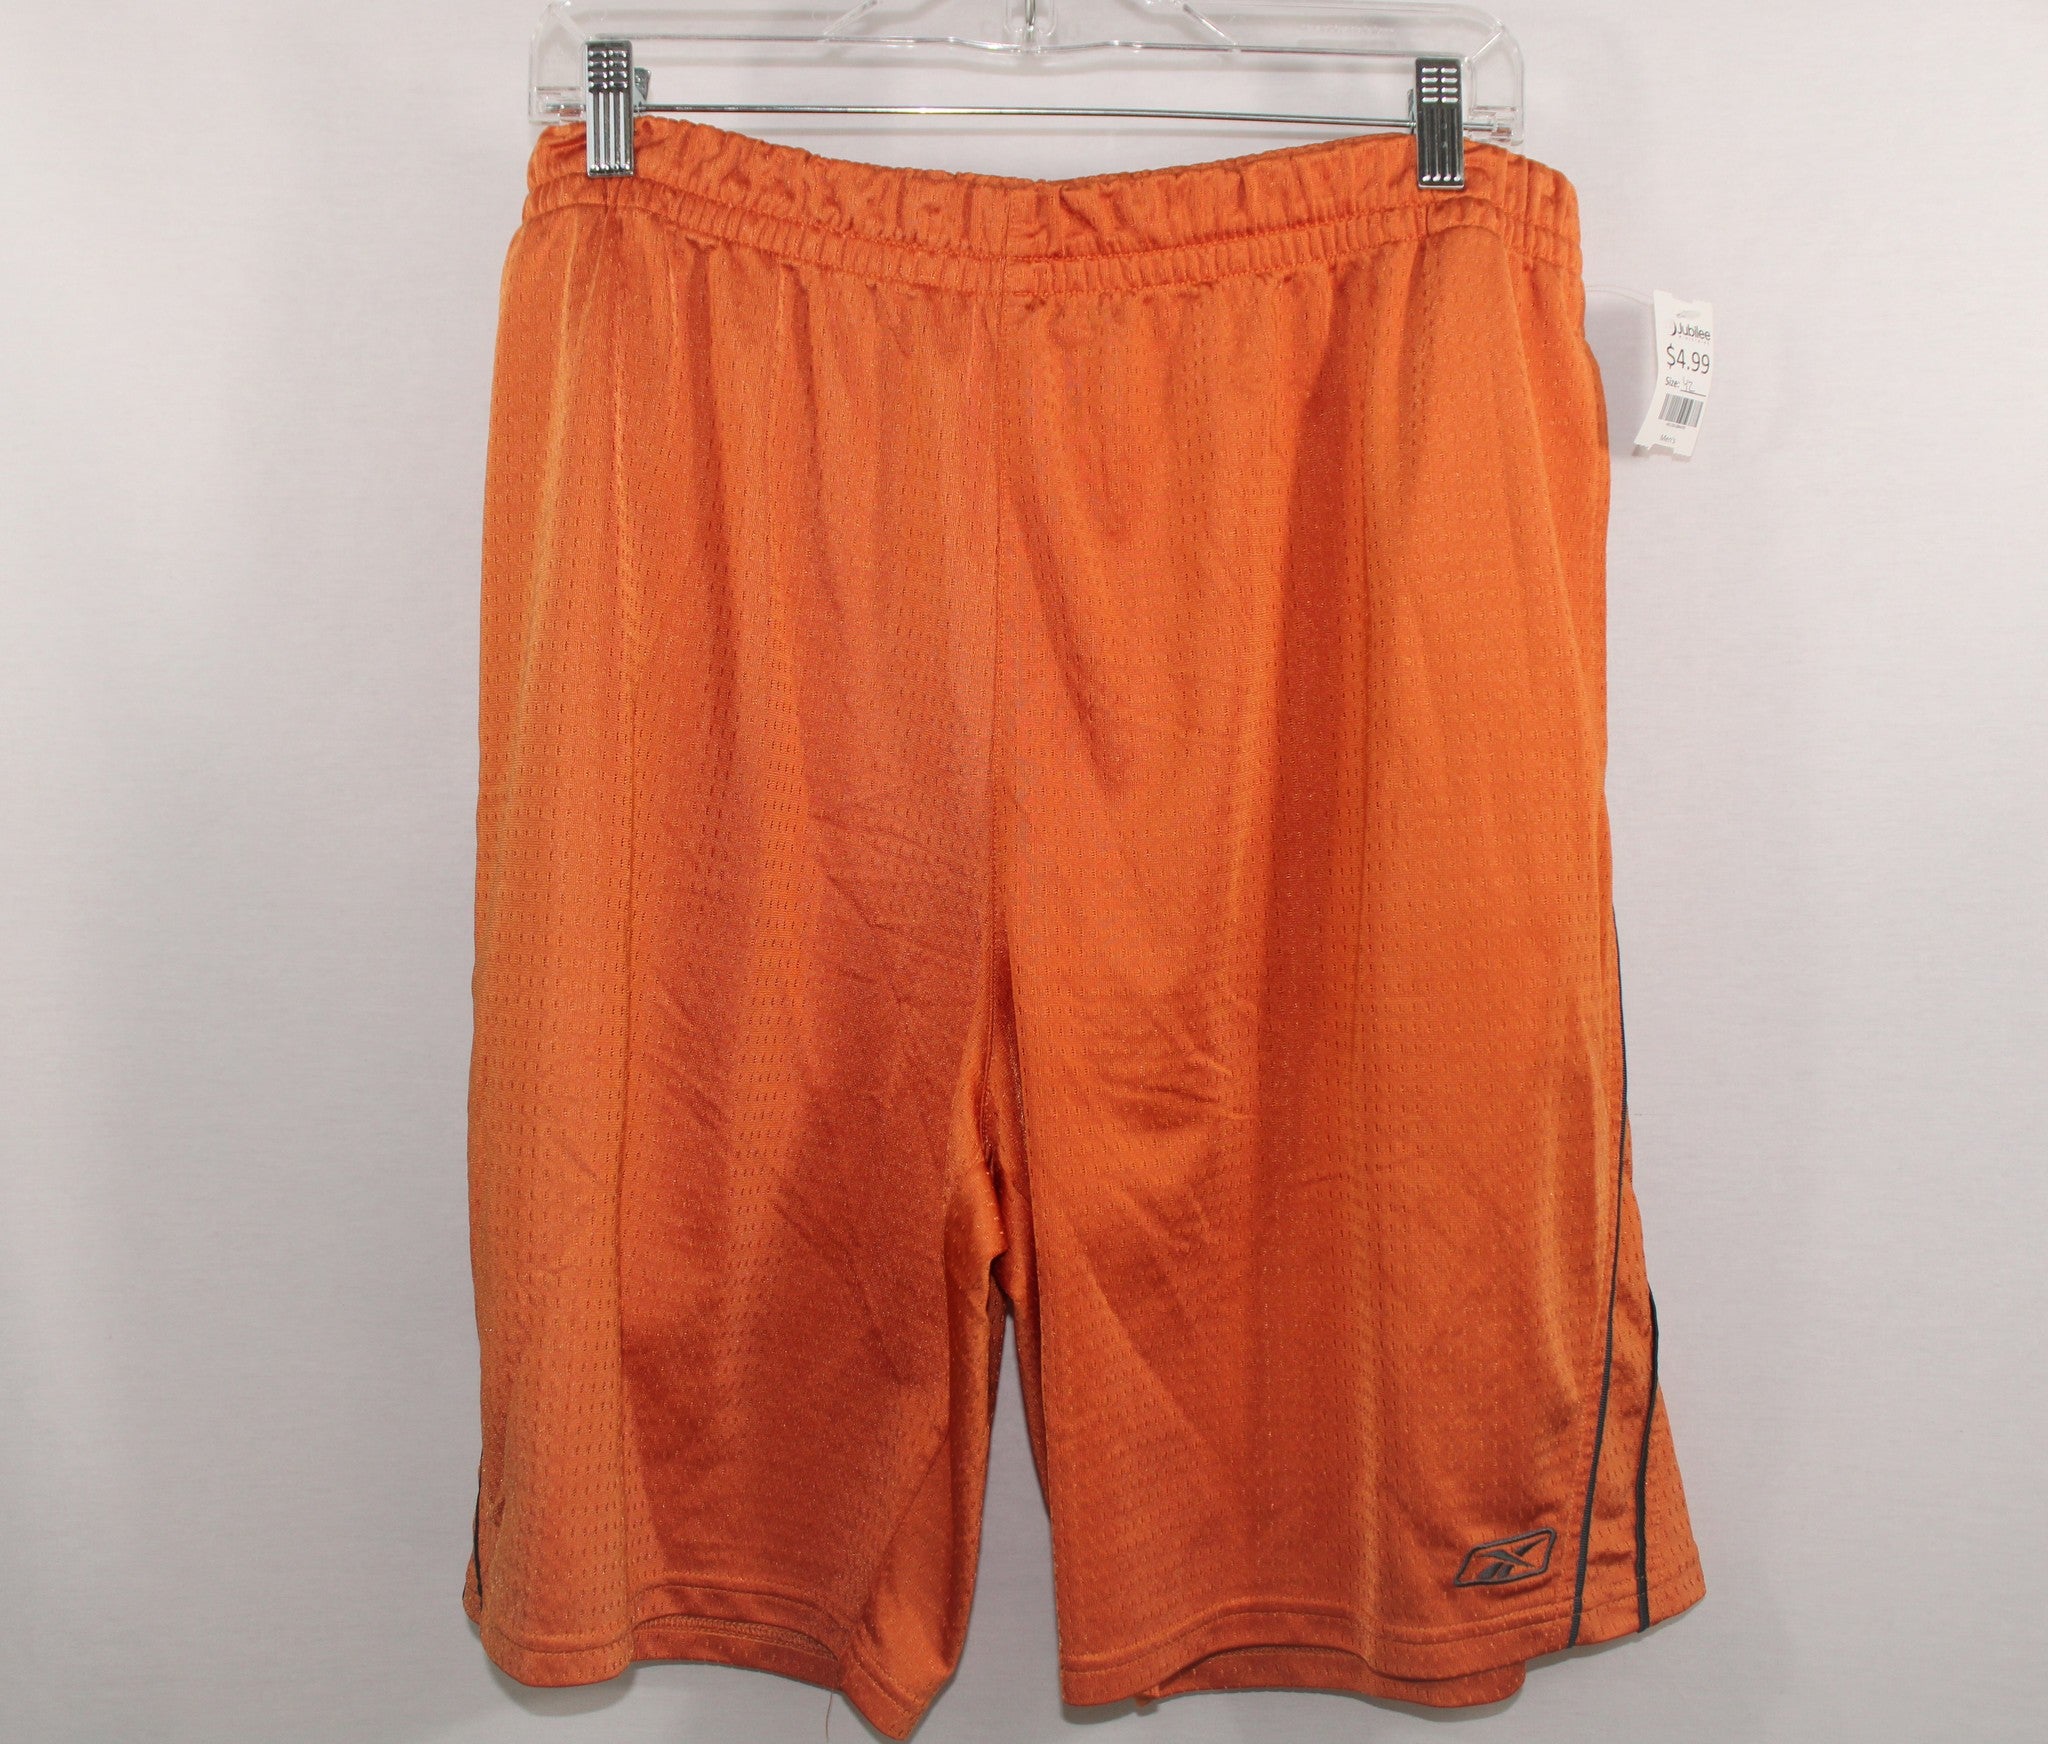 Reebok Orange Athletic Shorts | Size XL